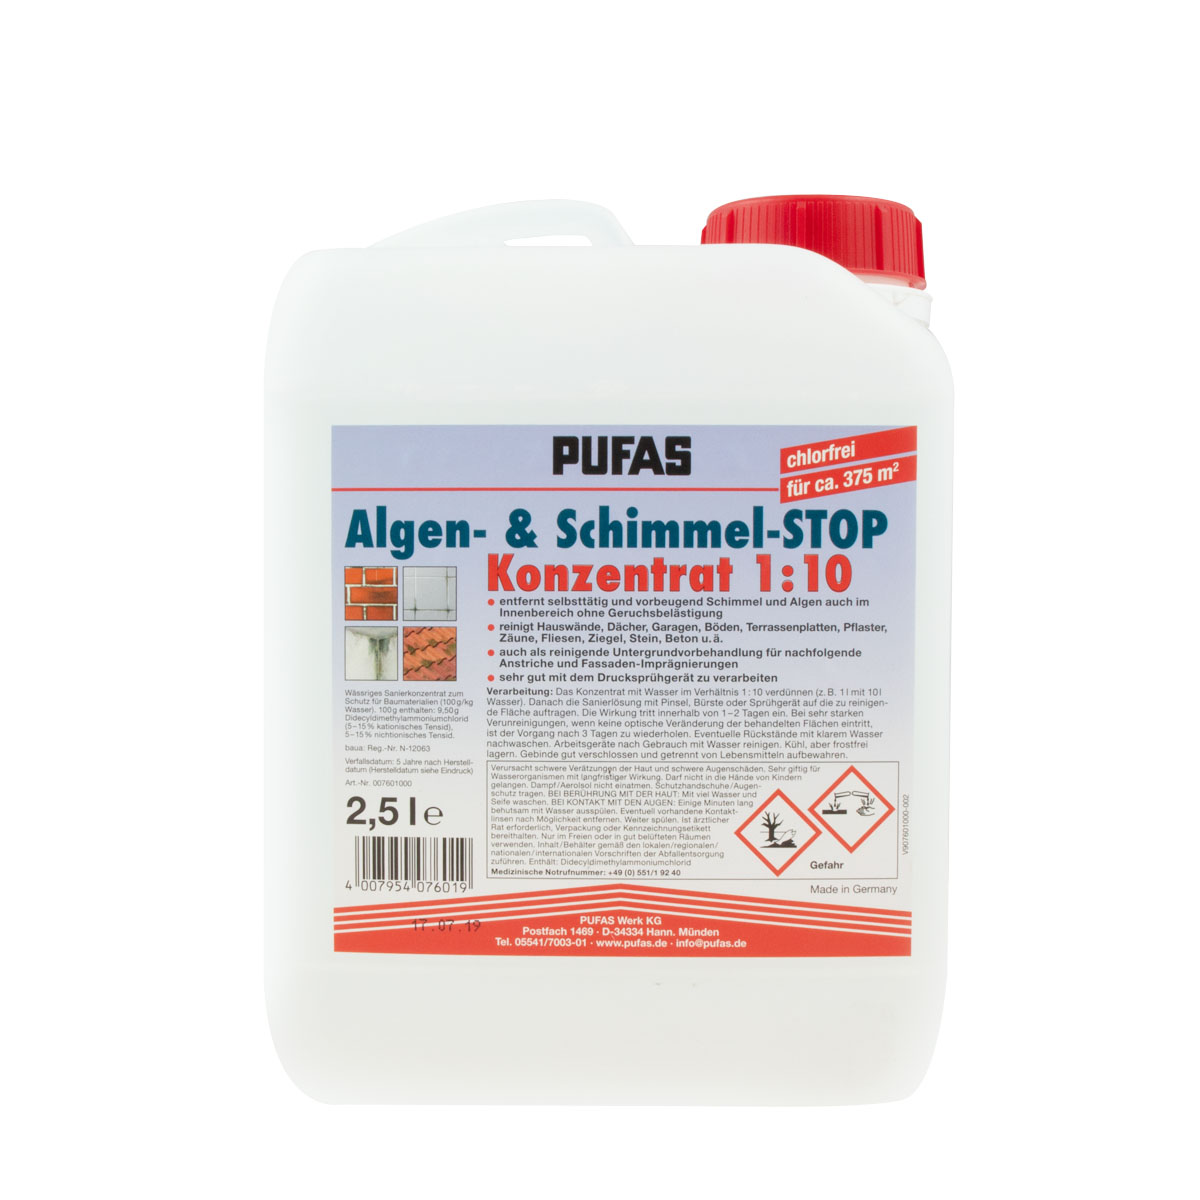 Pufas Algen- und Schimmel-STOP-Konzentrat 2,5L, chlorfrei